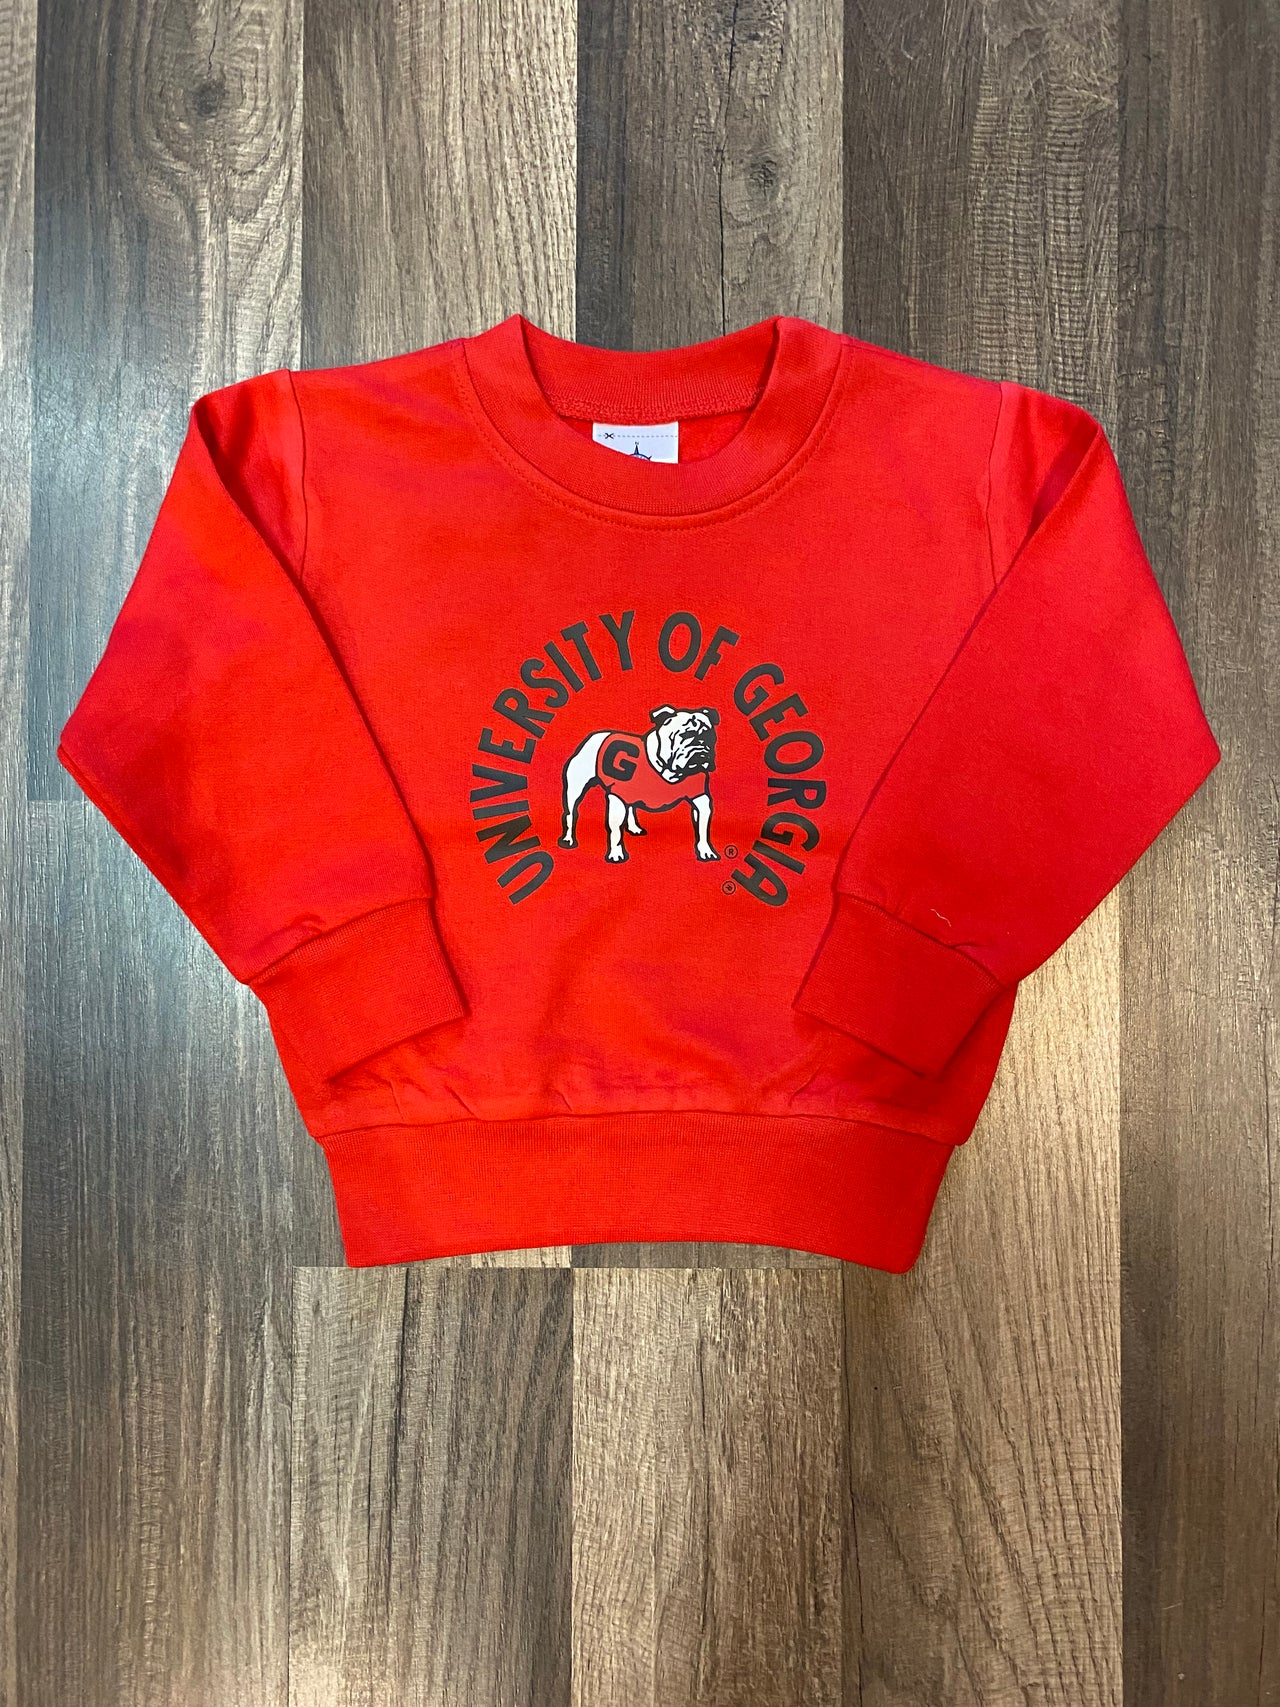 Toddler Sweatshirt.UGA.Red Standing Dog.